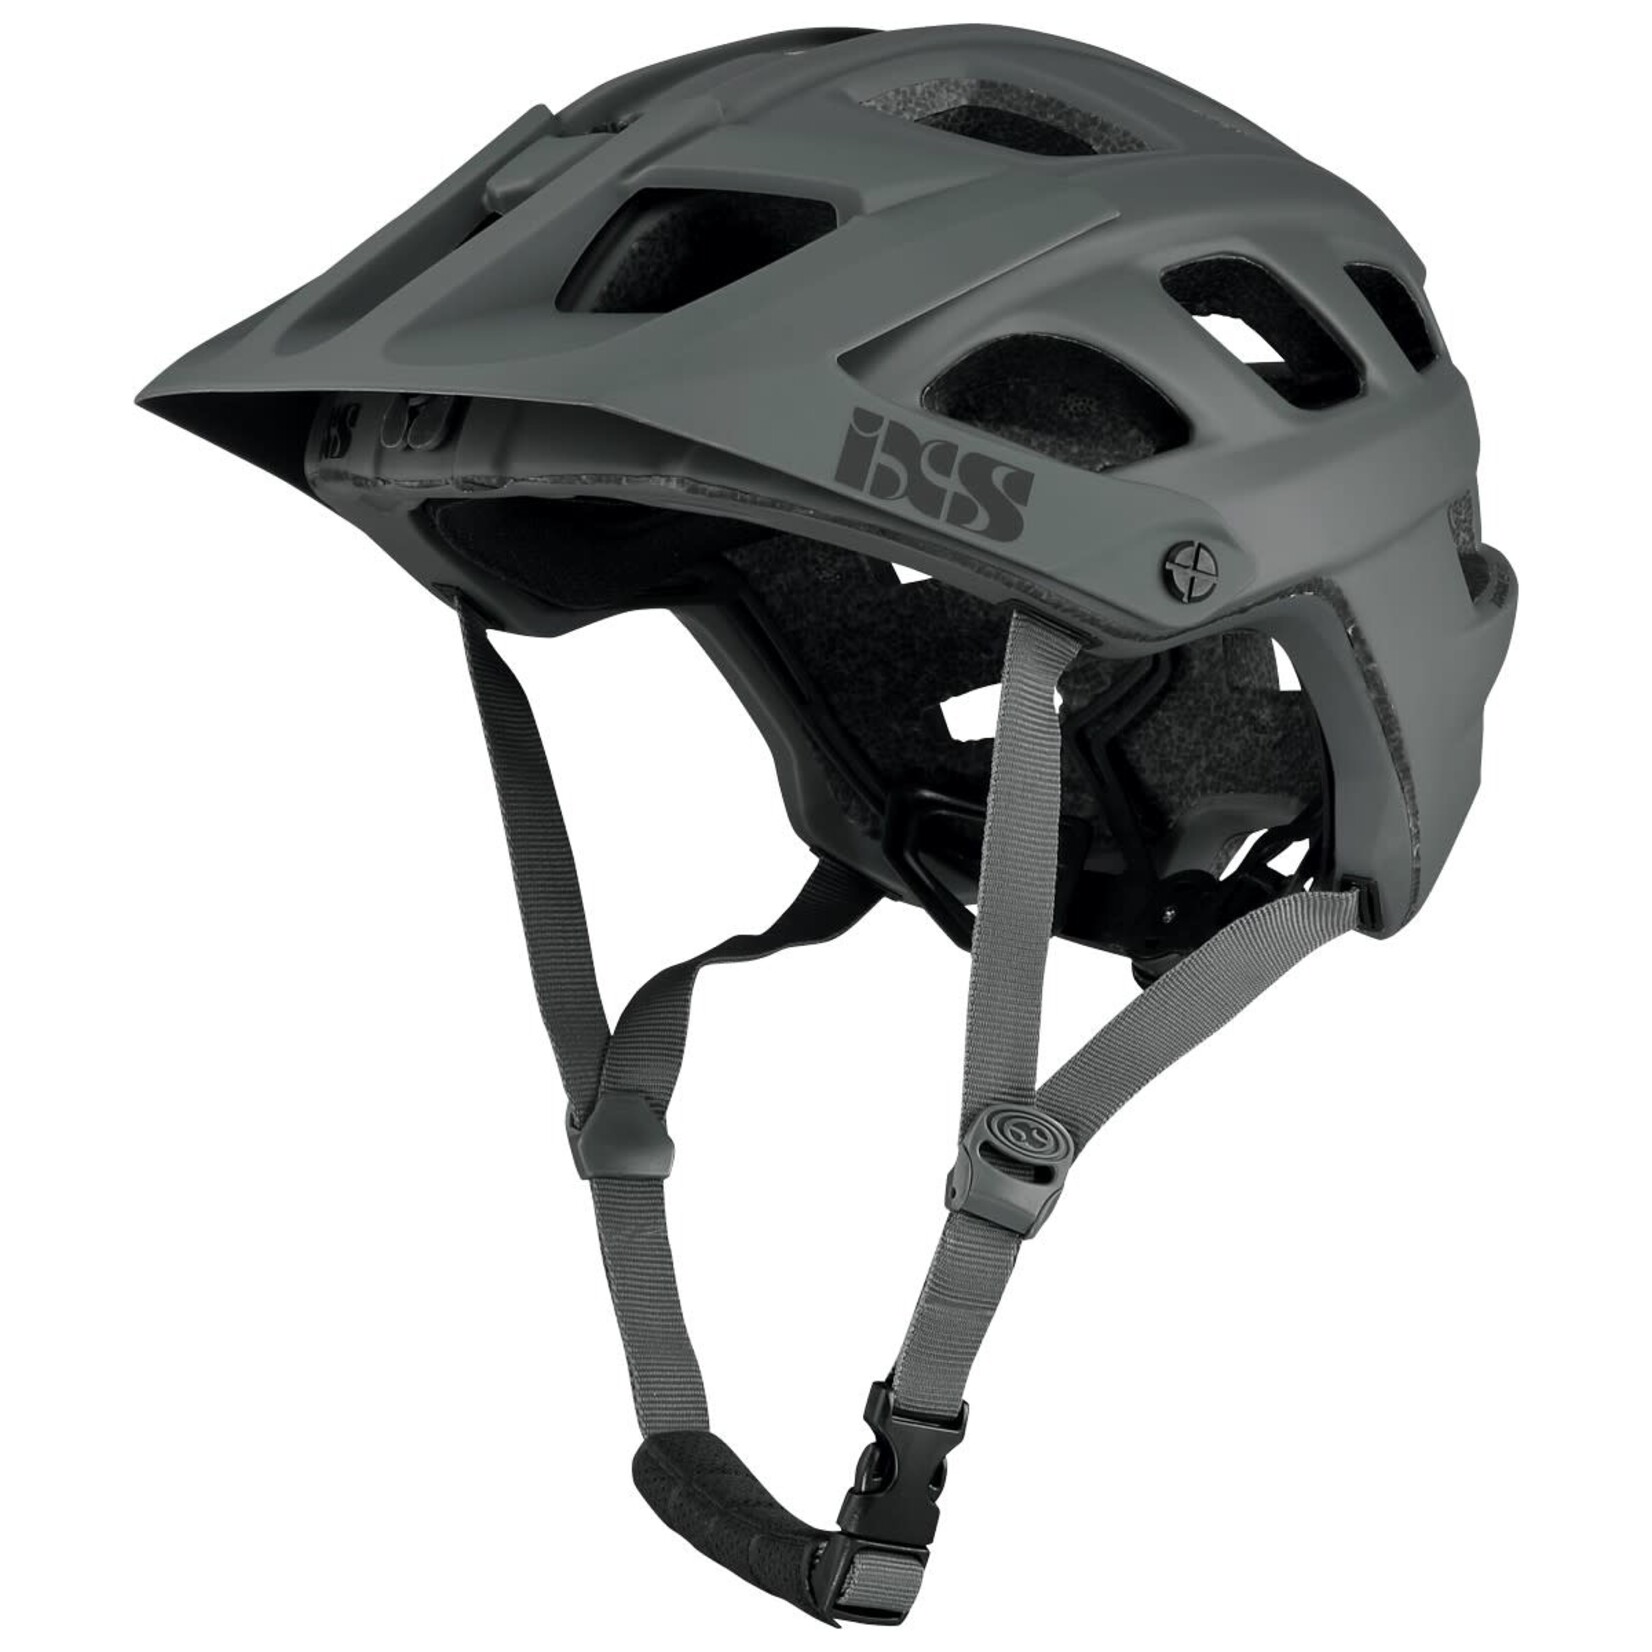 IXS IXS Trail Evo Helmet